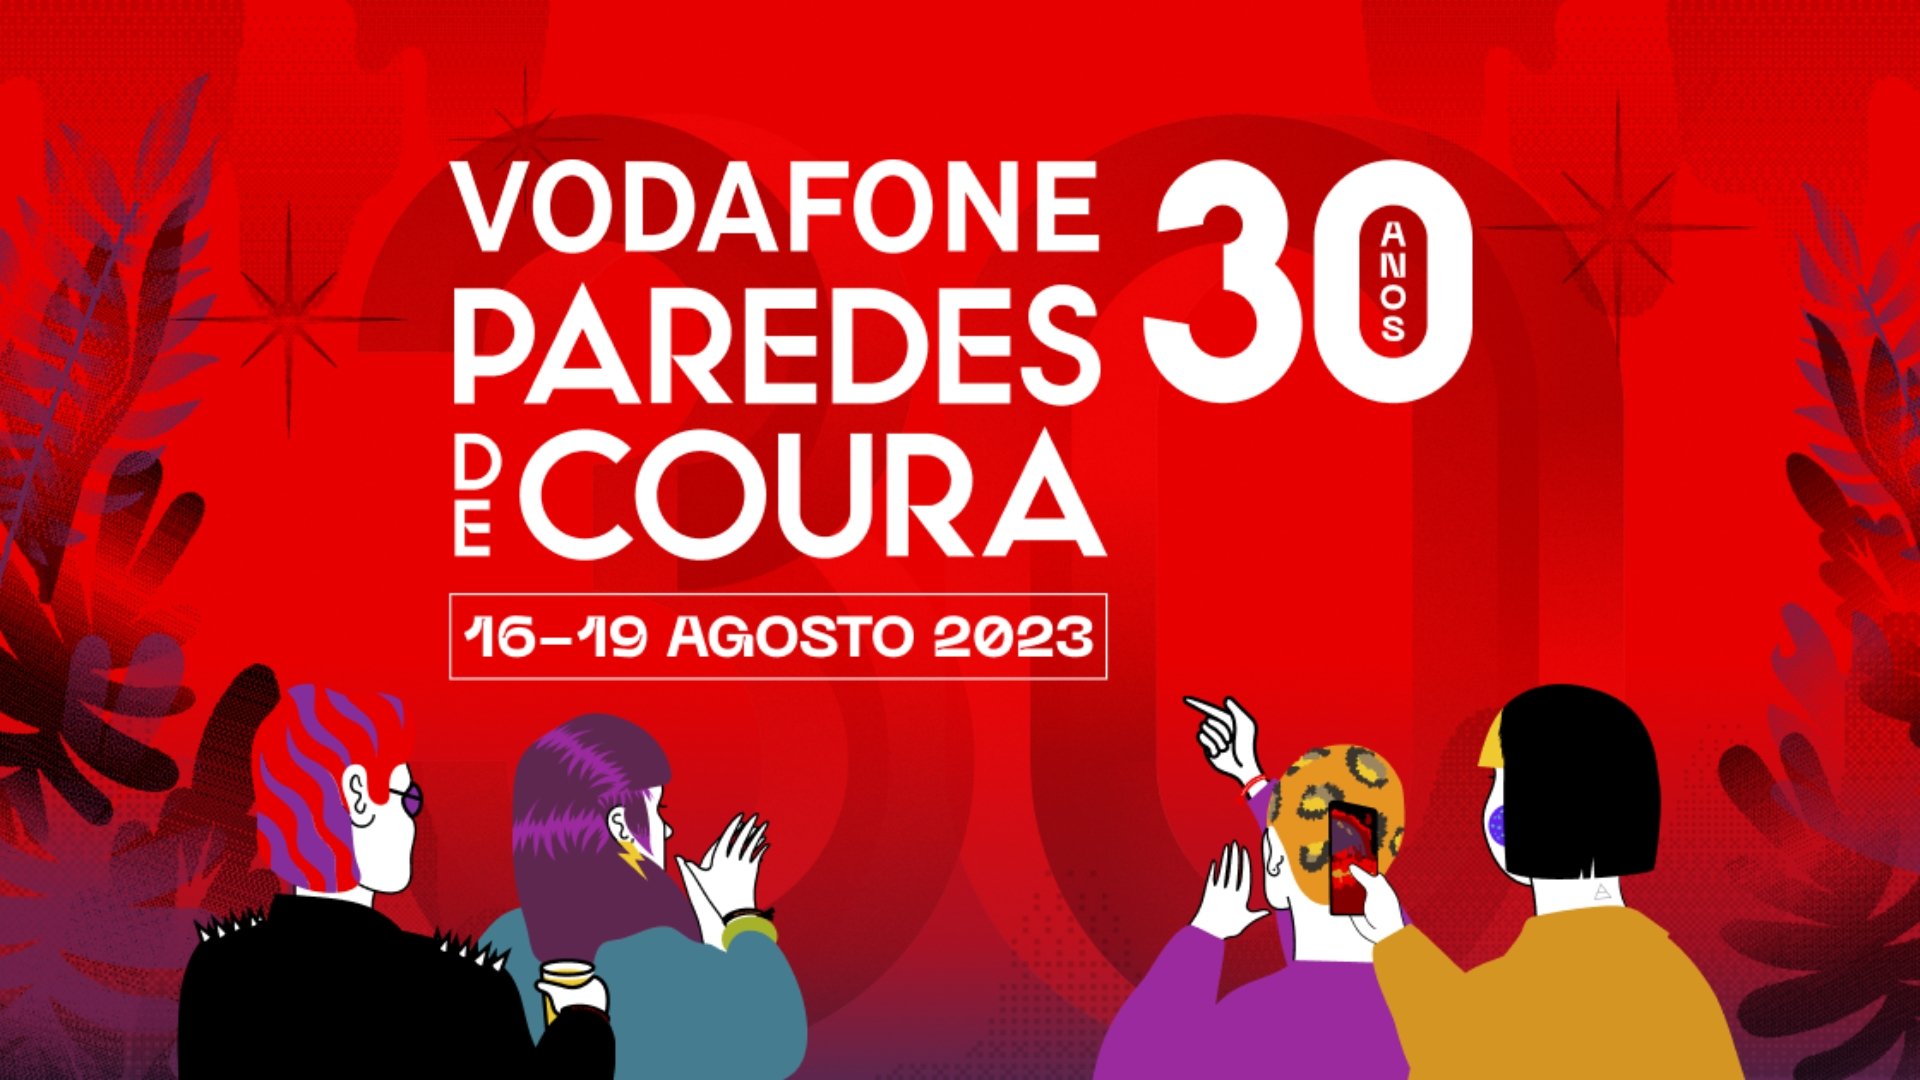 Vodafone paredes de coura 2023